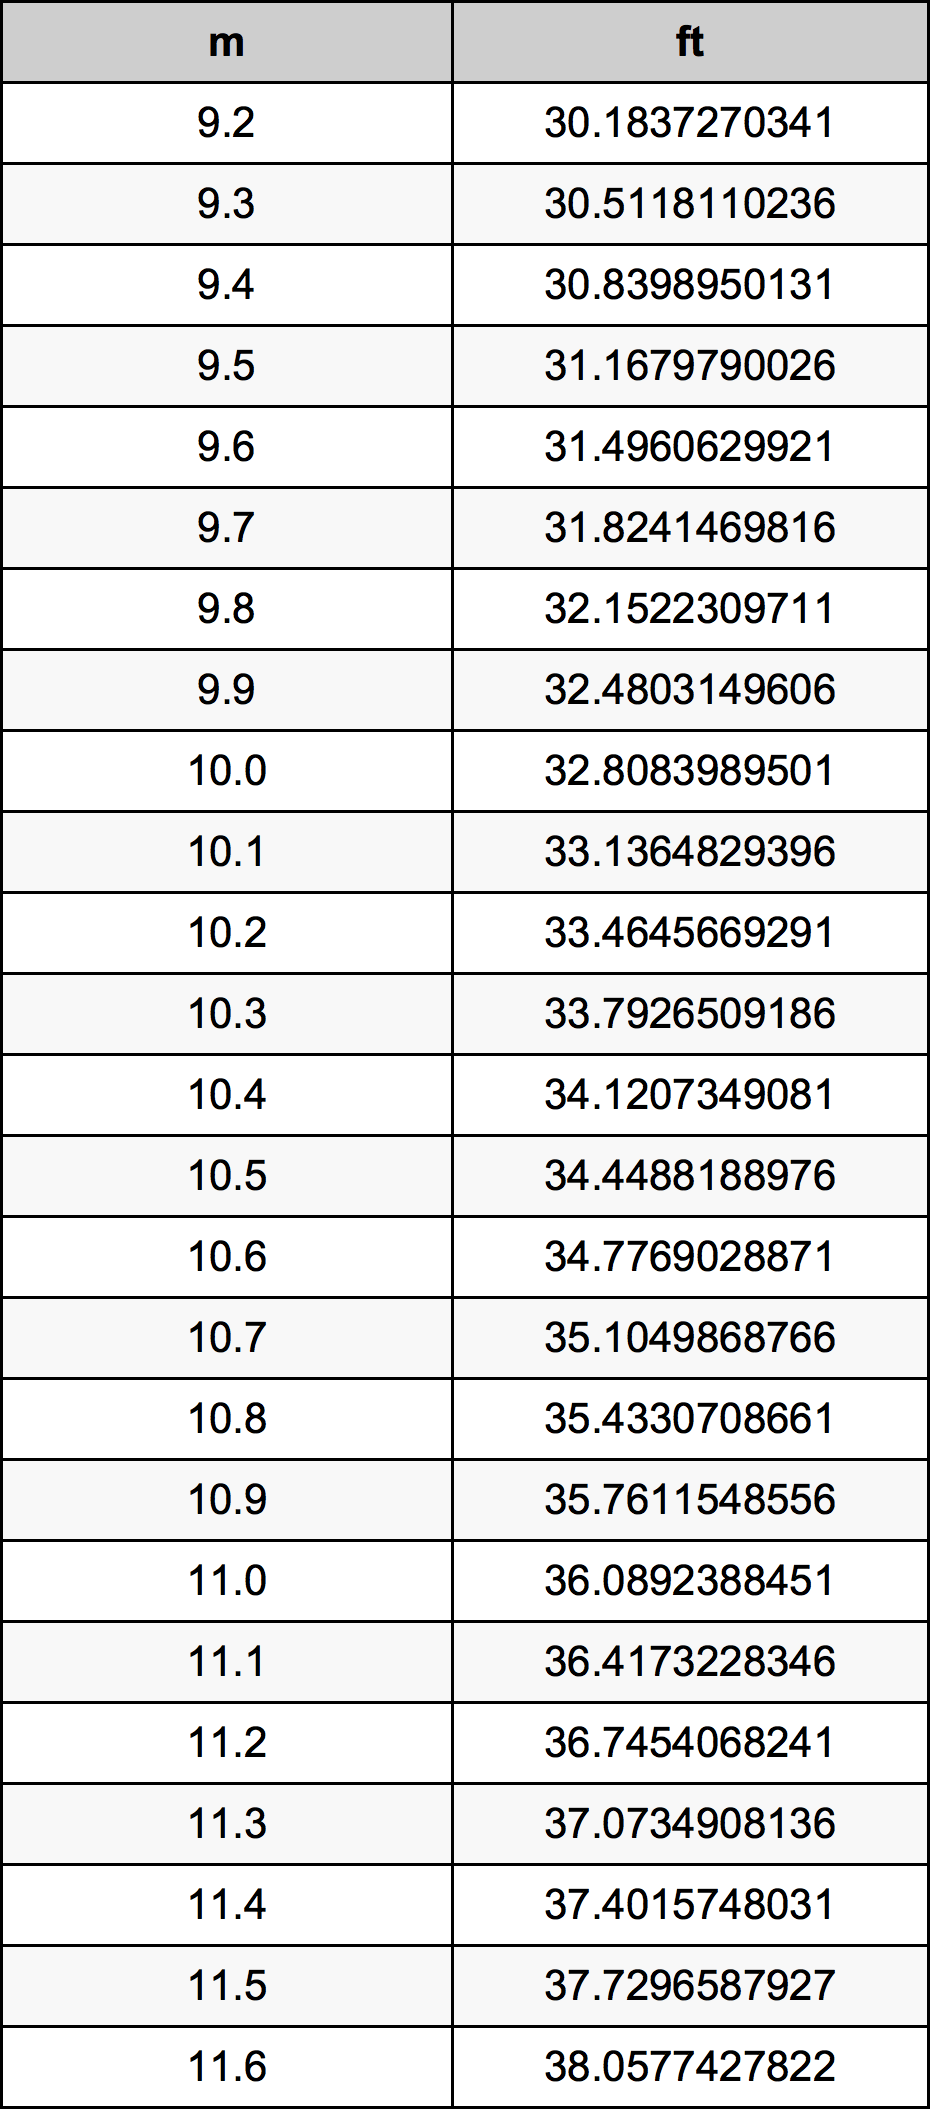 10.4 Metru tabelul de conversie